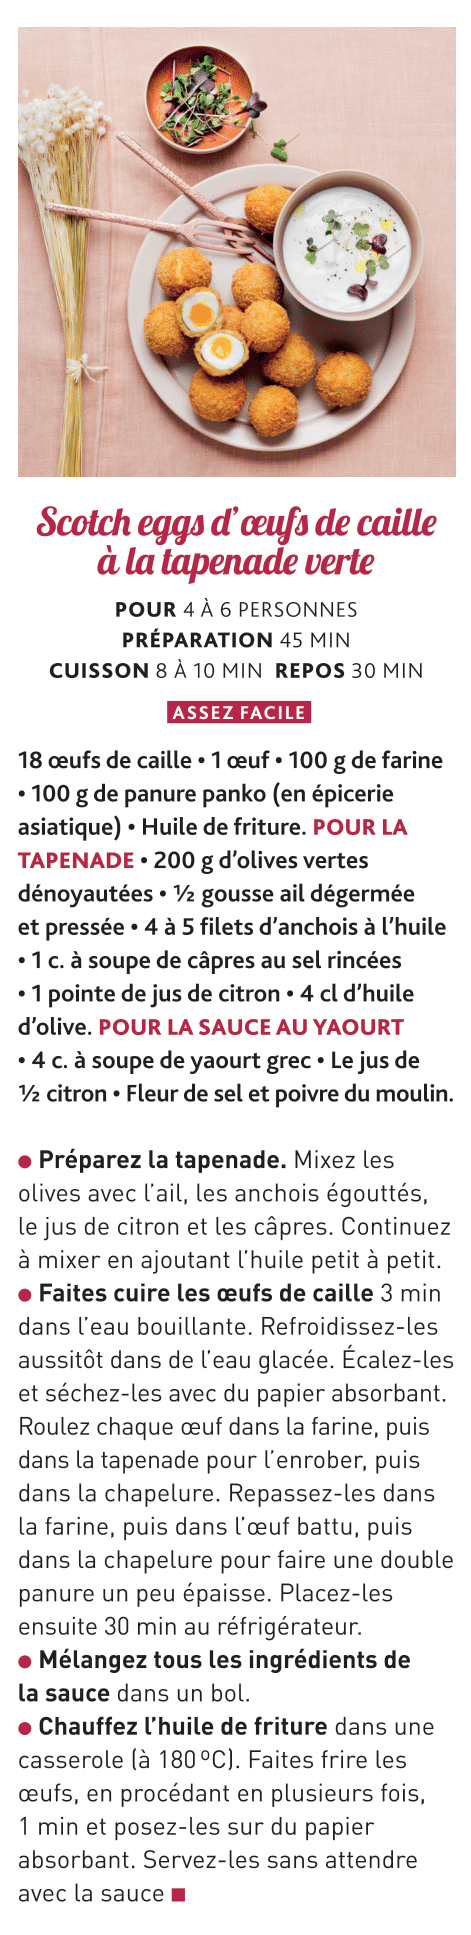 régal magazine cuisine noel recette